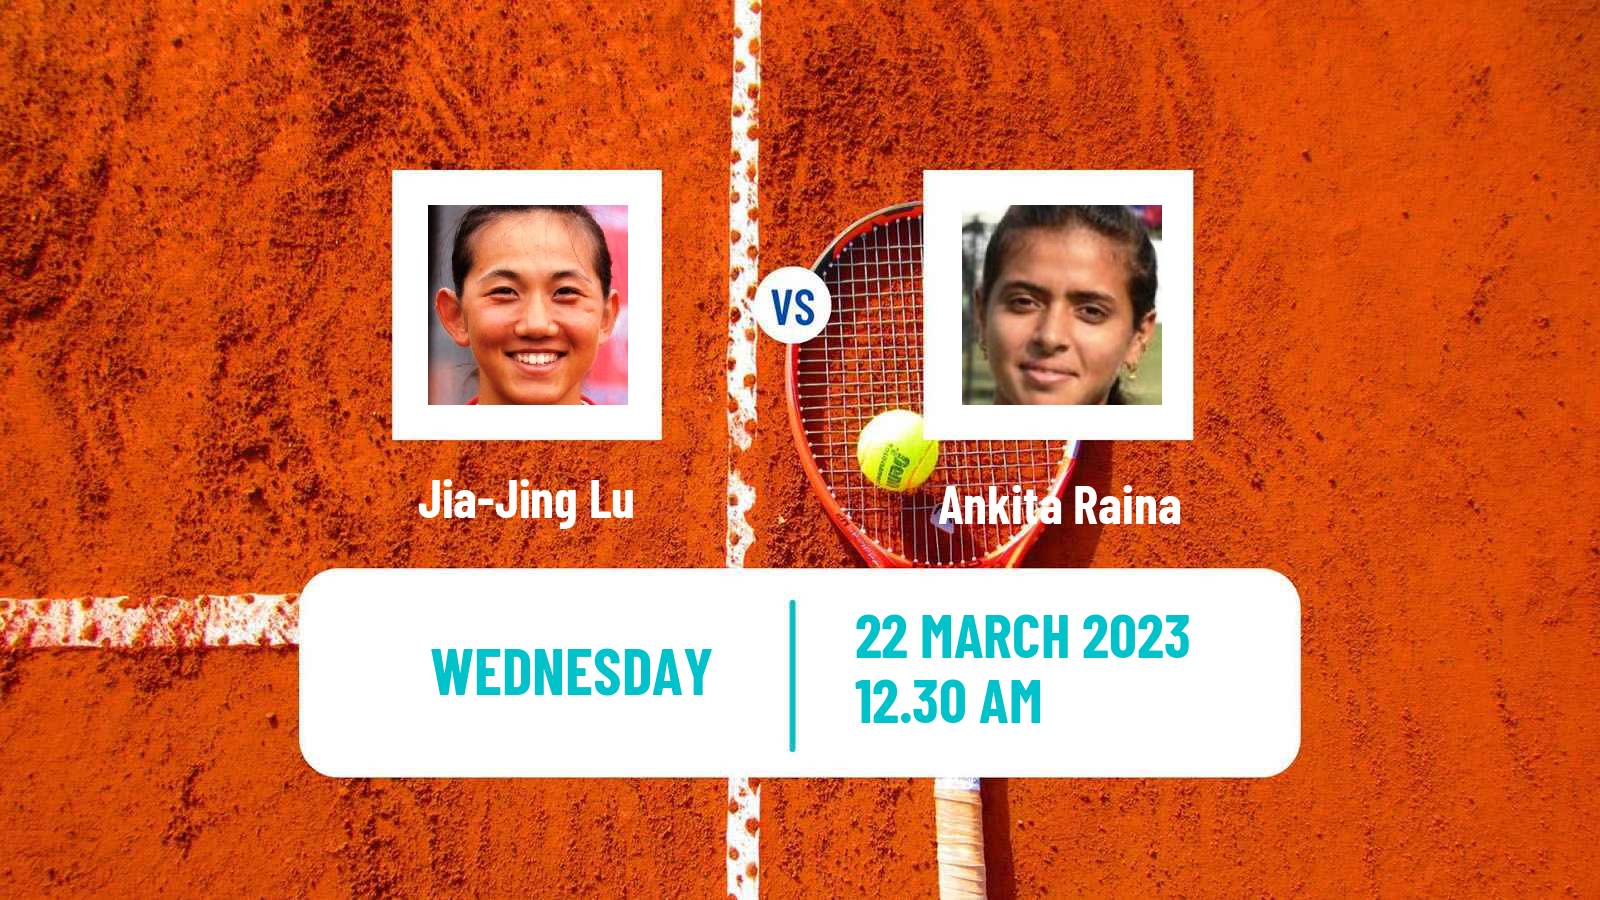 Tennis ITF Tournaments Jia-Jing Lu - Ankita Raina